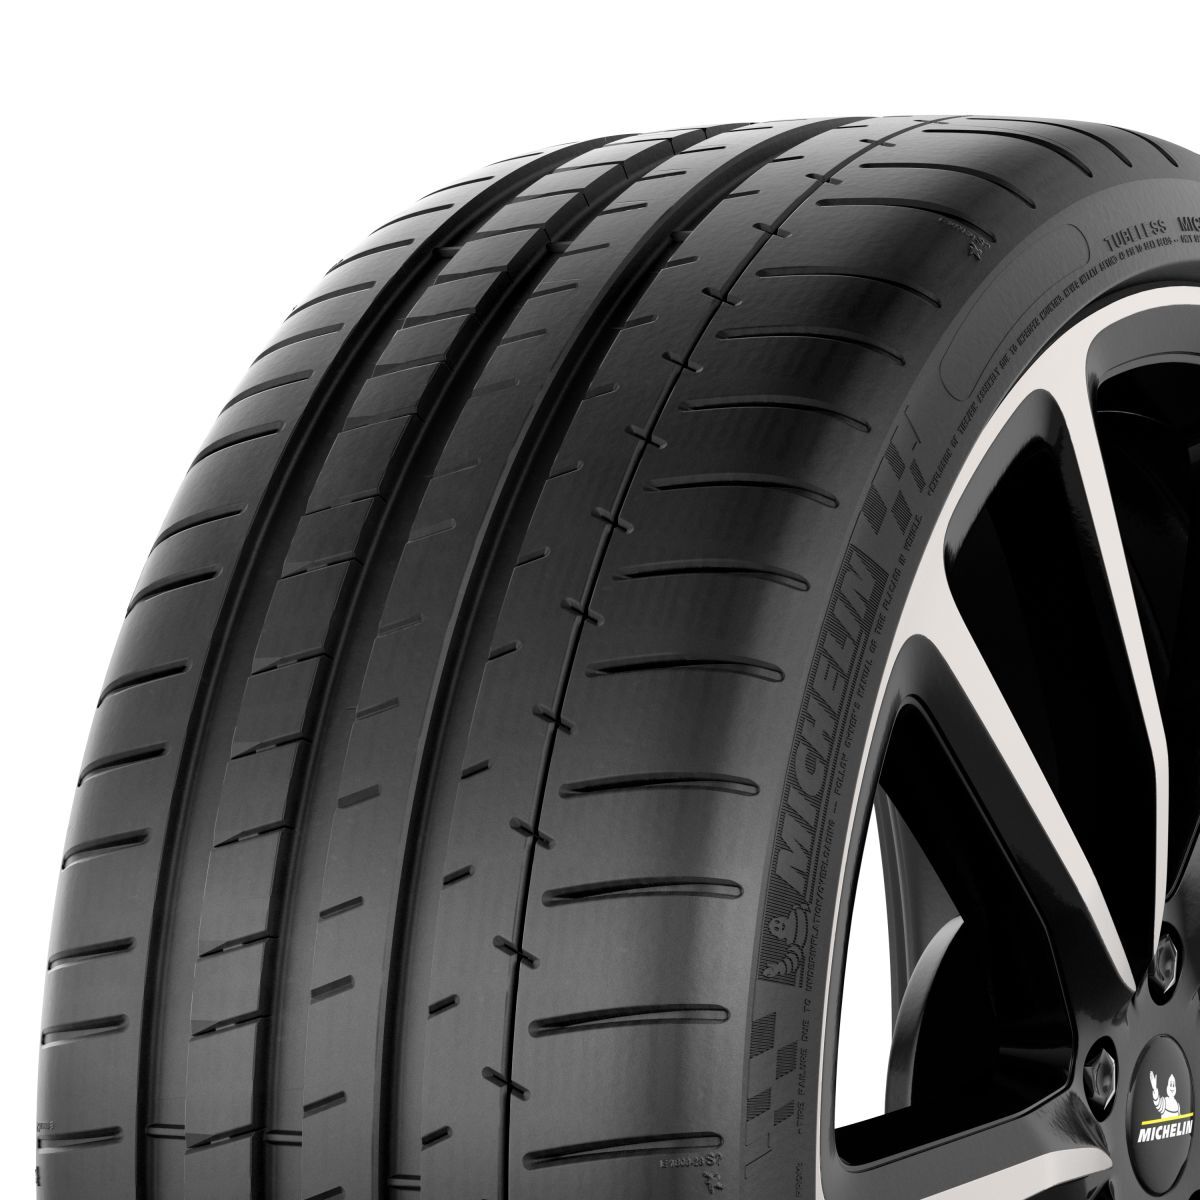 Neumáticos de verano MICHELIN Pilot Super Sport 265/35R20 XL 99Y